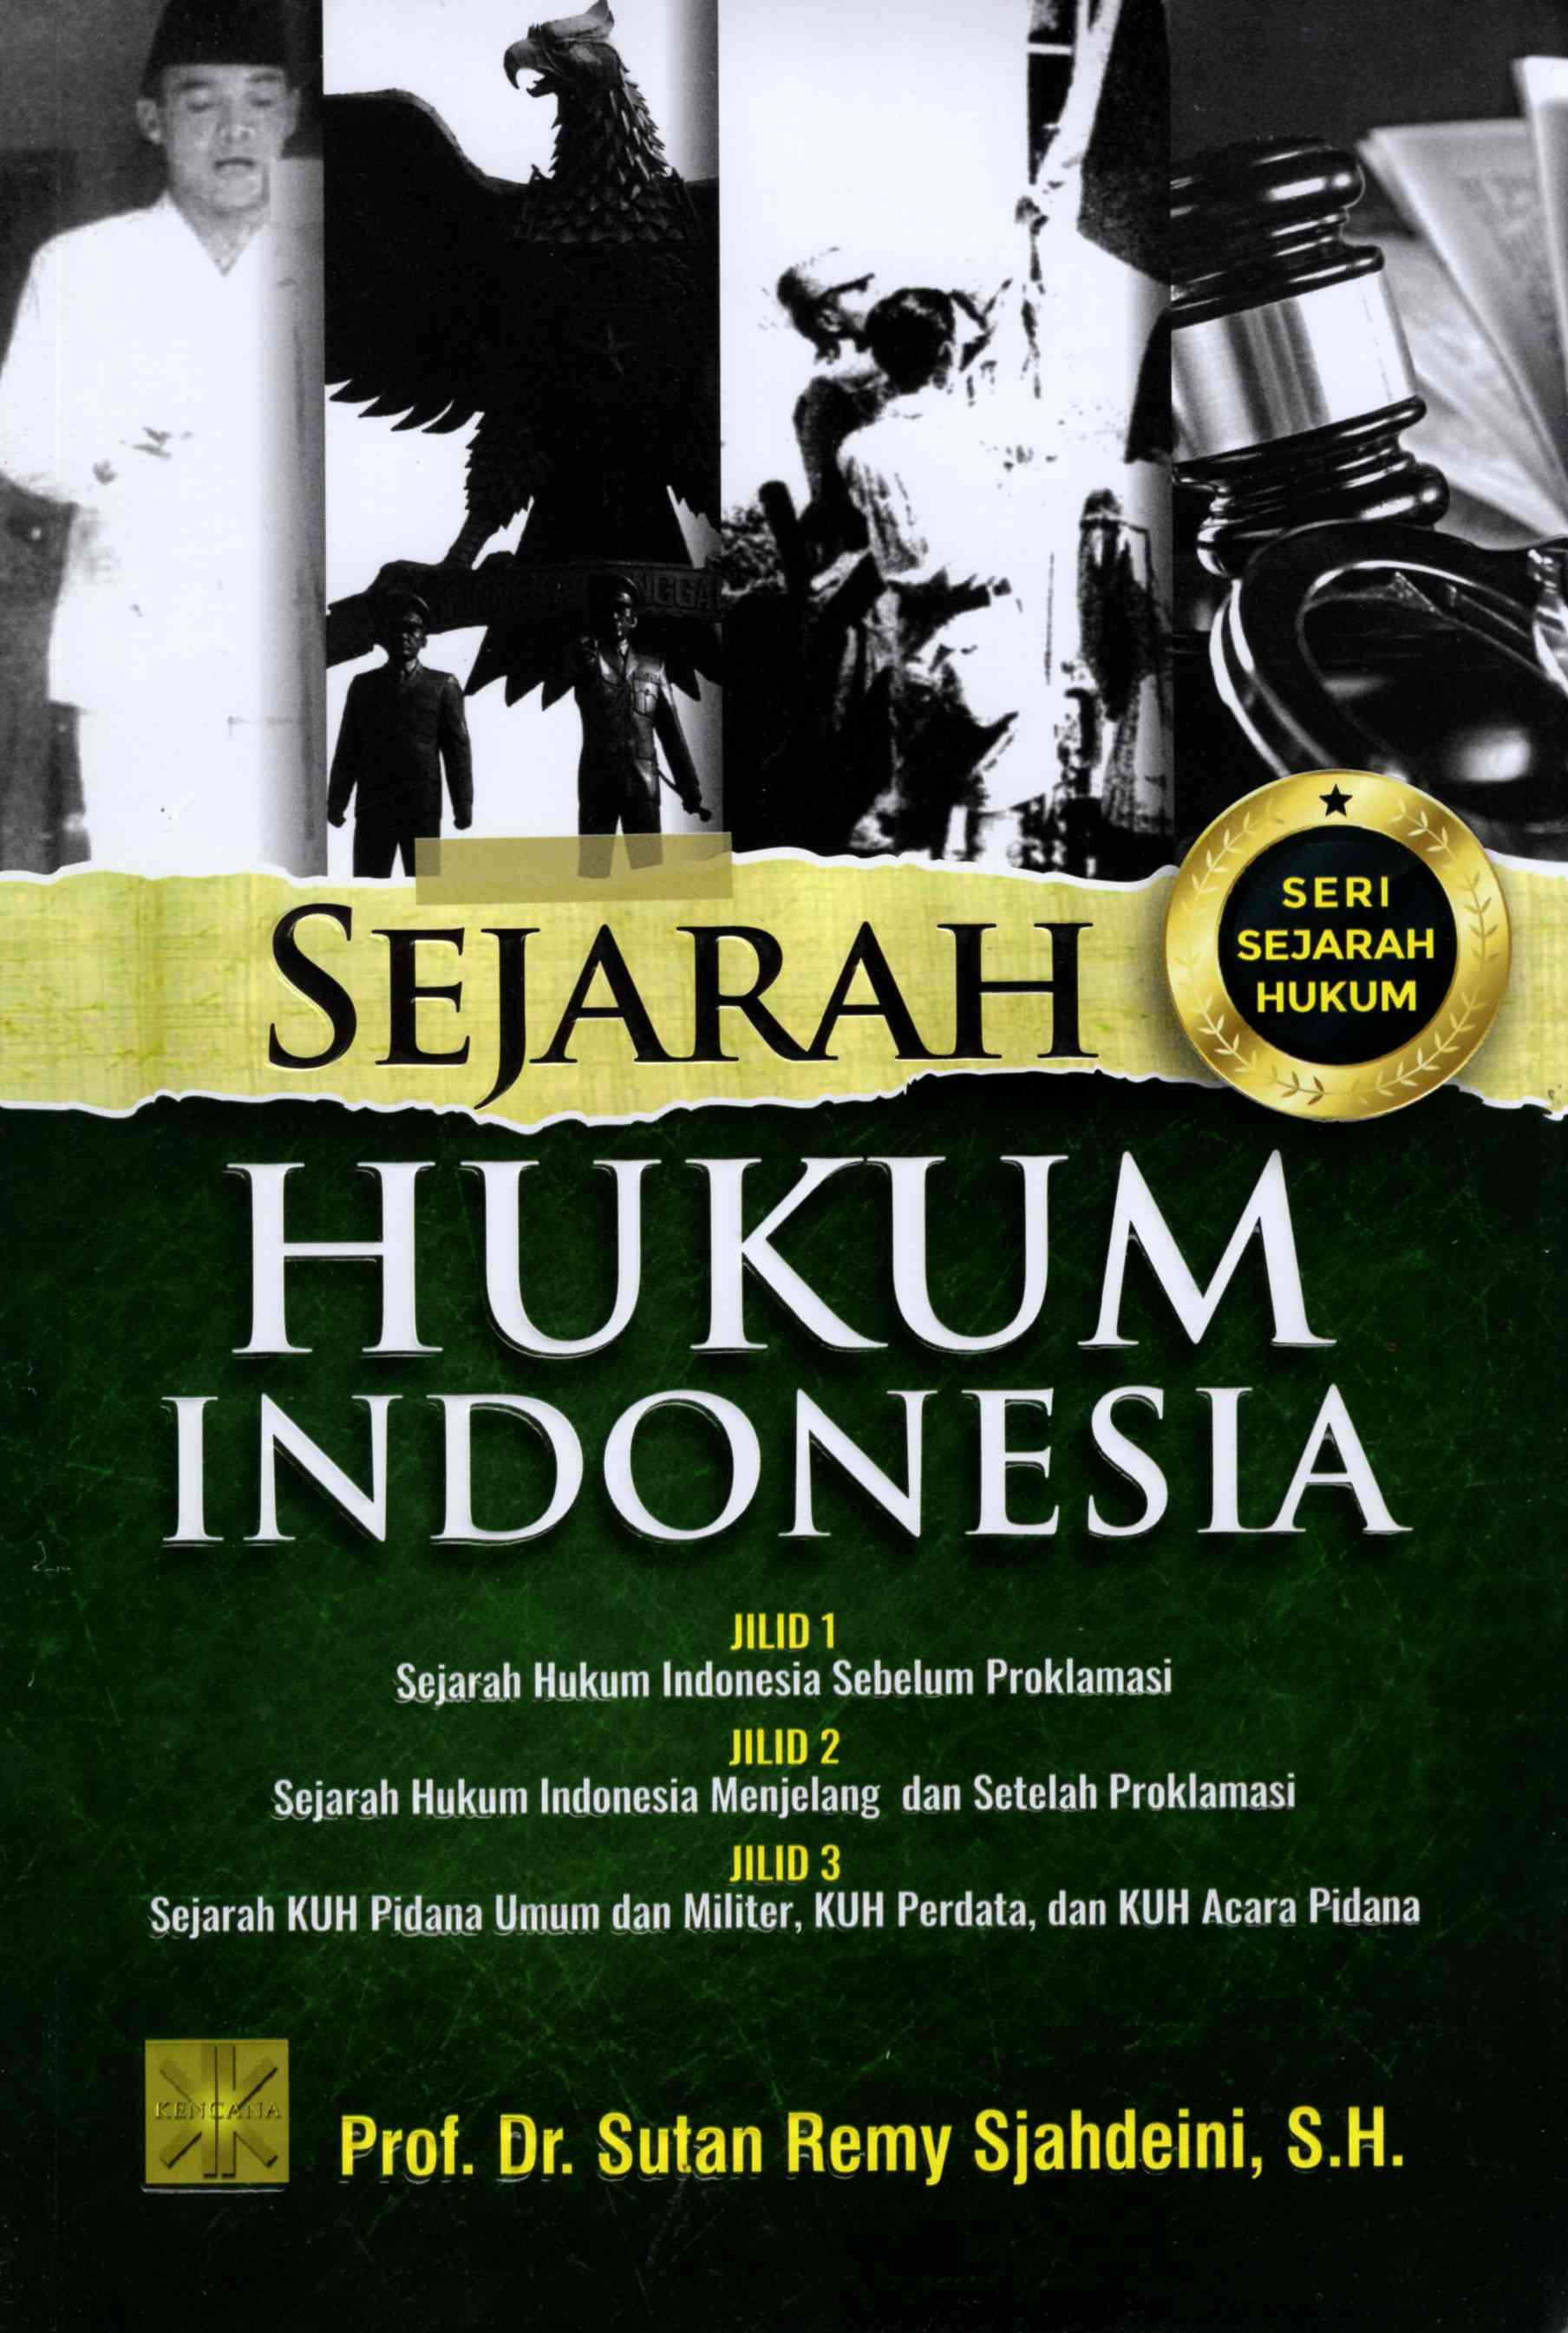 Seri Sejarah Hukum: Sejarah Hukum Indonesia